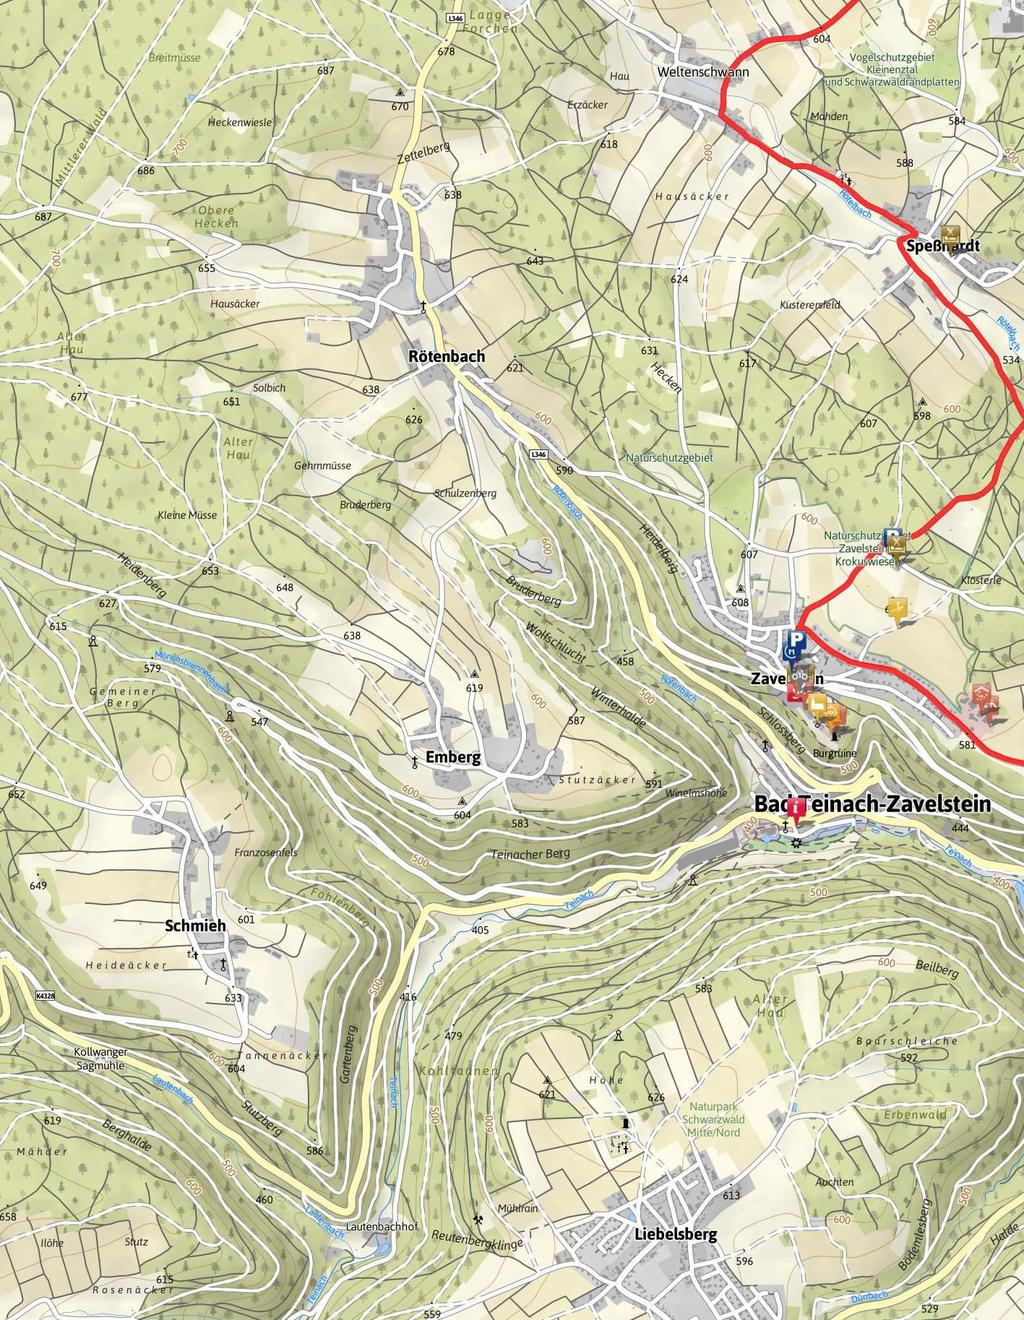 26.7 km 1:15 h 496 m 496 m SCHWIERIGKEIT leicht Kartengrundlagen: outdooractive Kartografie; Deutschland: Geoinformationen Vermessungsverwaltungen der Bundesländer und BKG (www.bkg.bund.